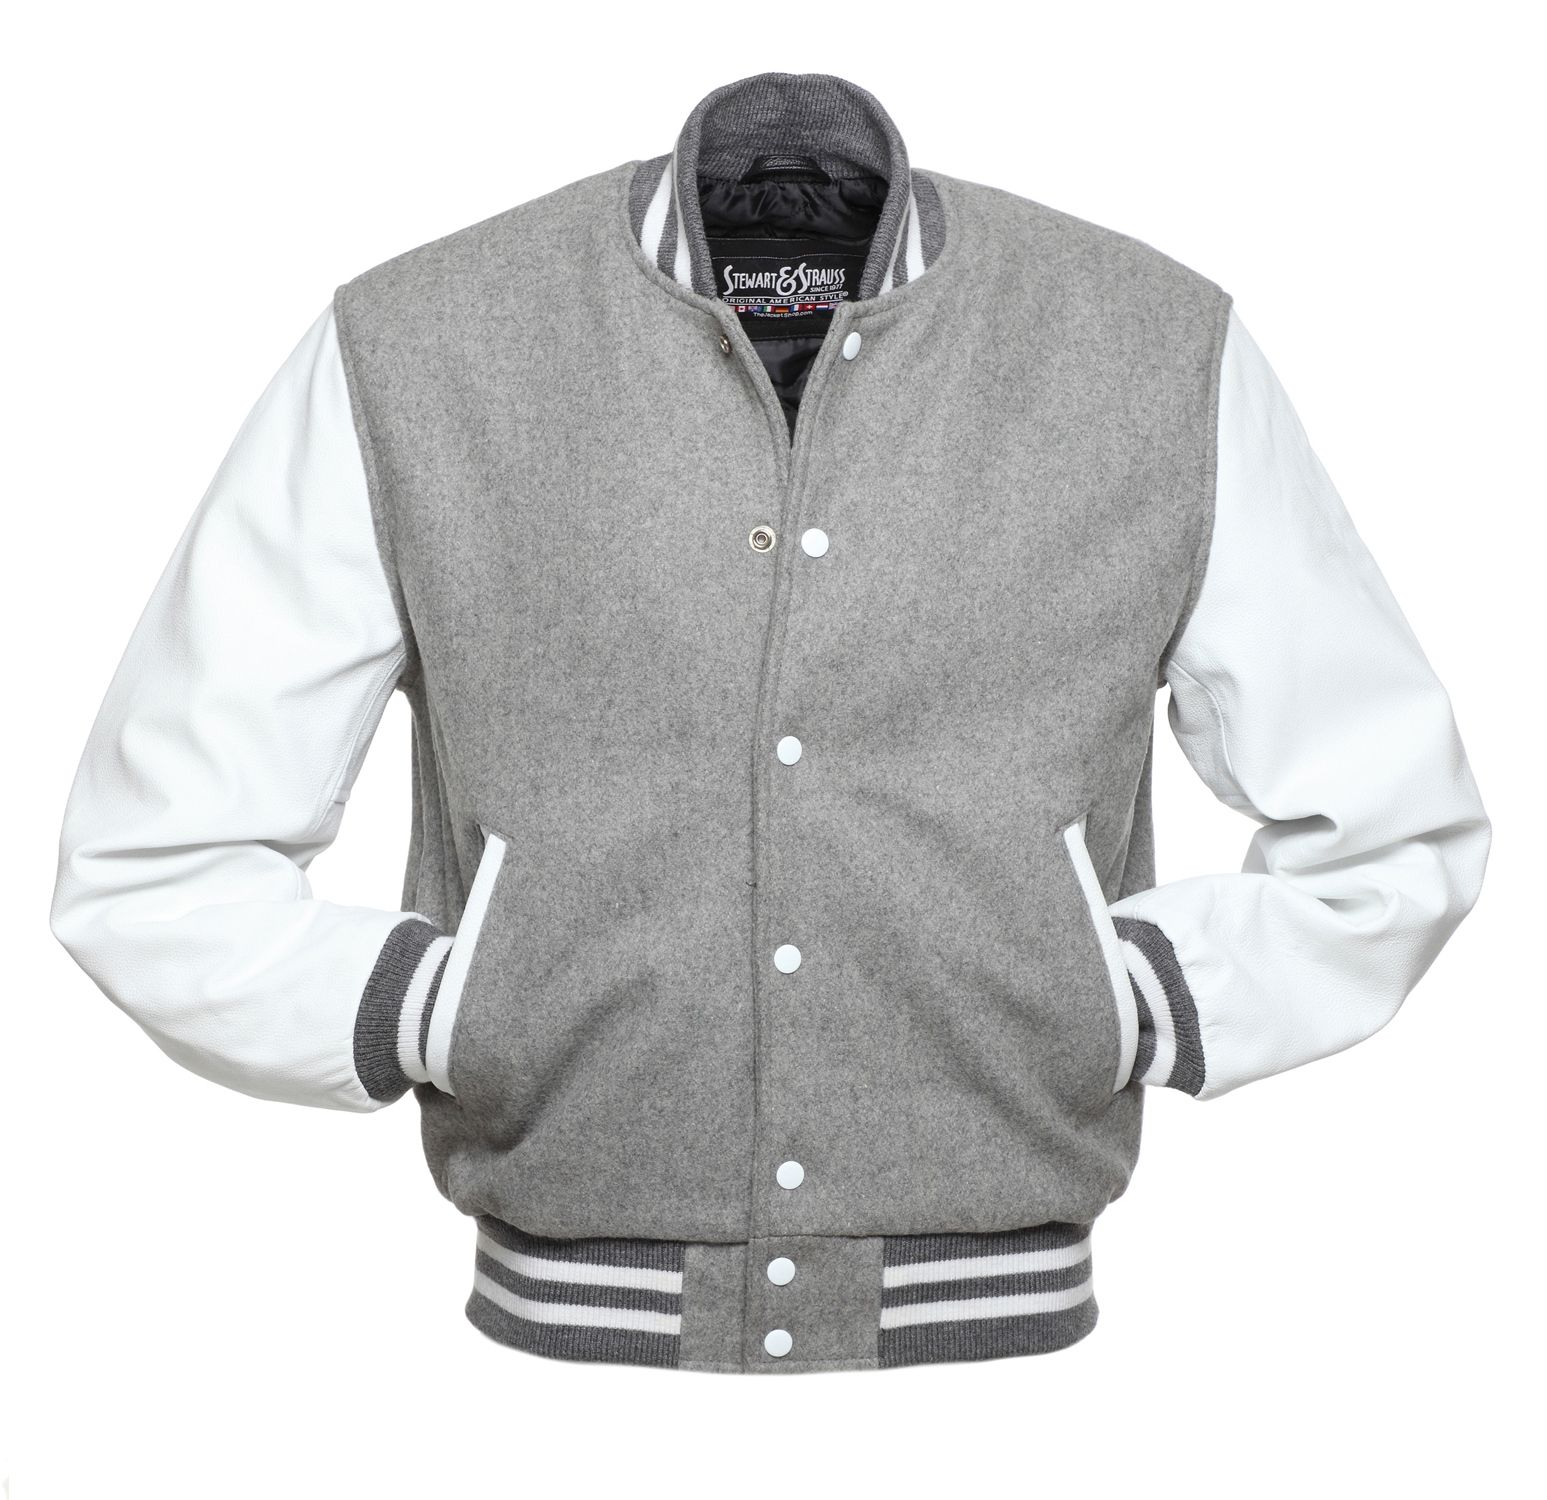 Jacketshop Jacket Grey Wool White Leather Letterman Jackets